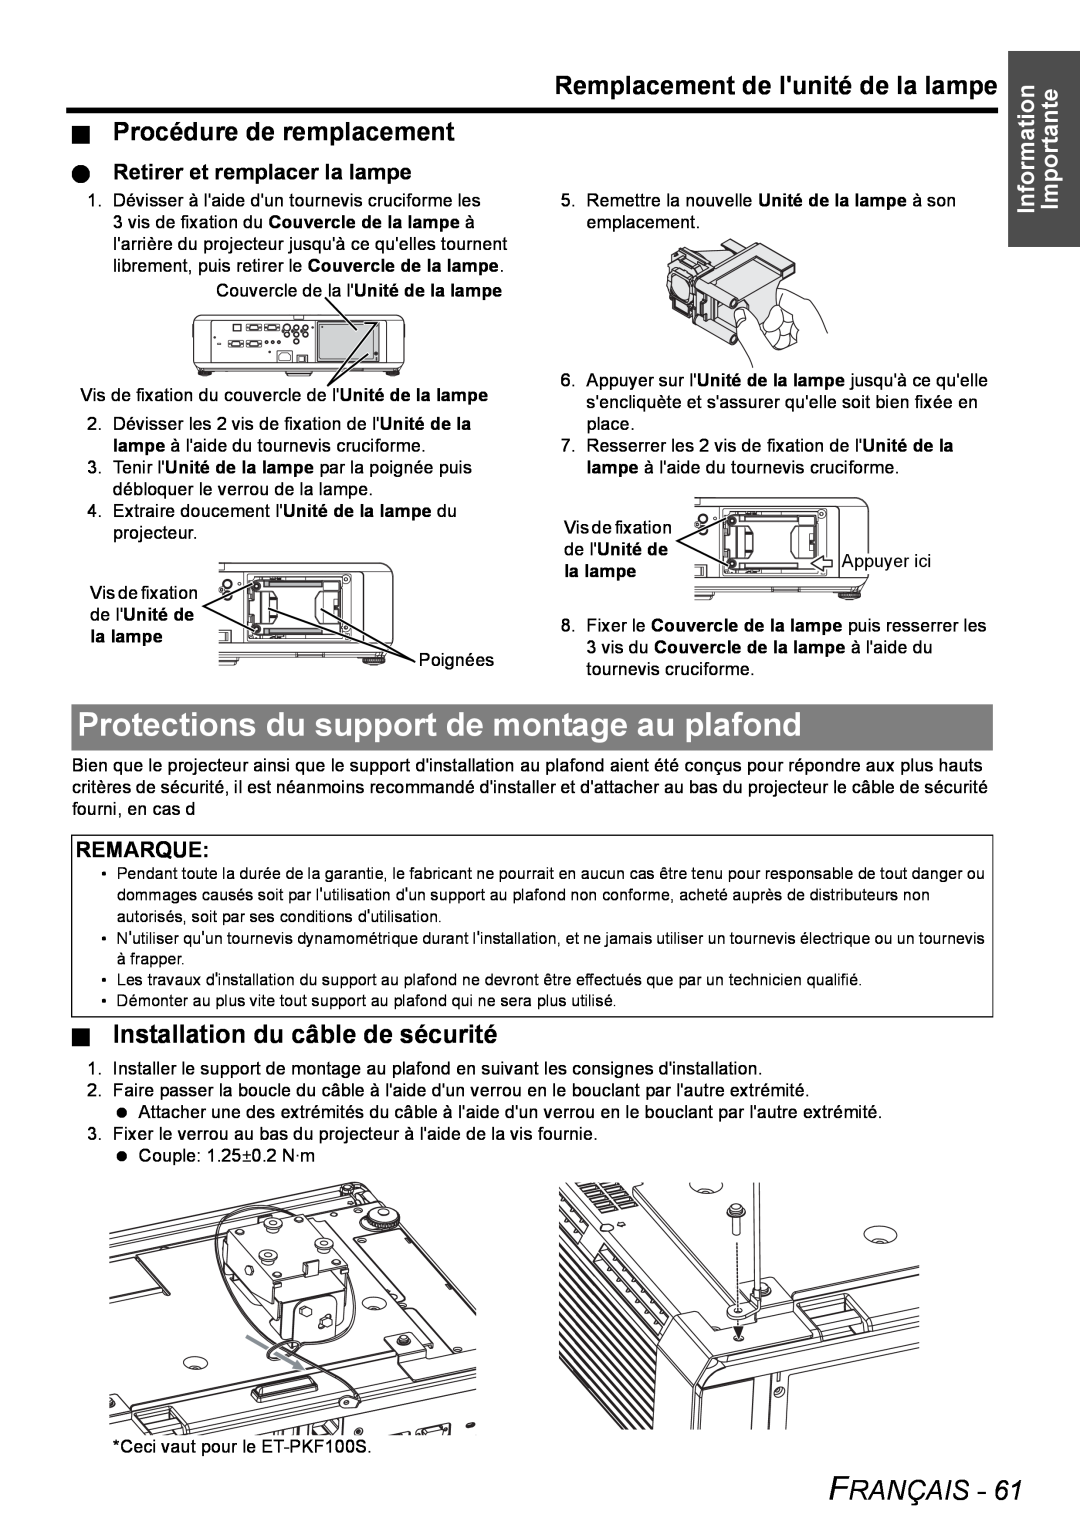 Philips PT-FW100NTU Protections du support de montage au plafond, Remplacement de lunité de la lampe, Français, Remarque 